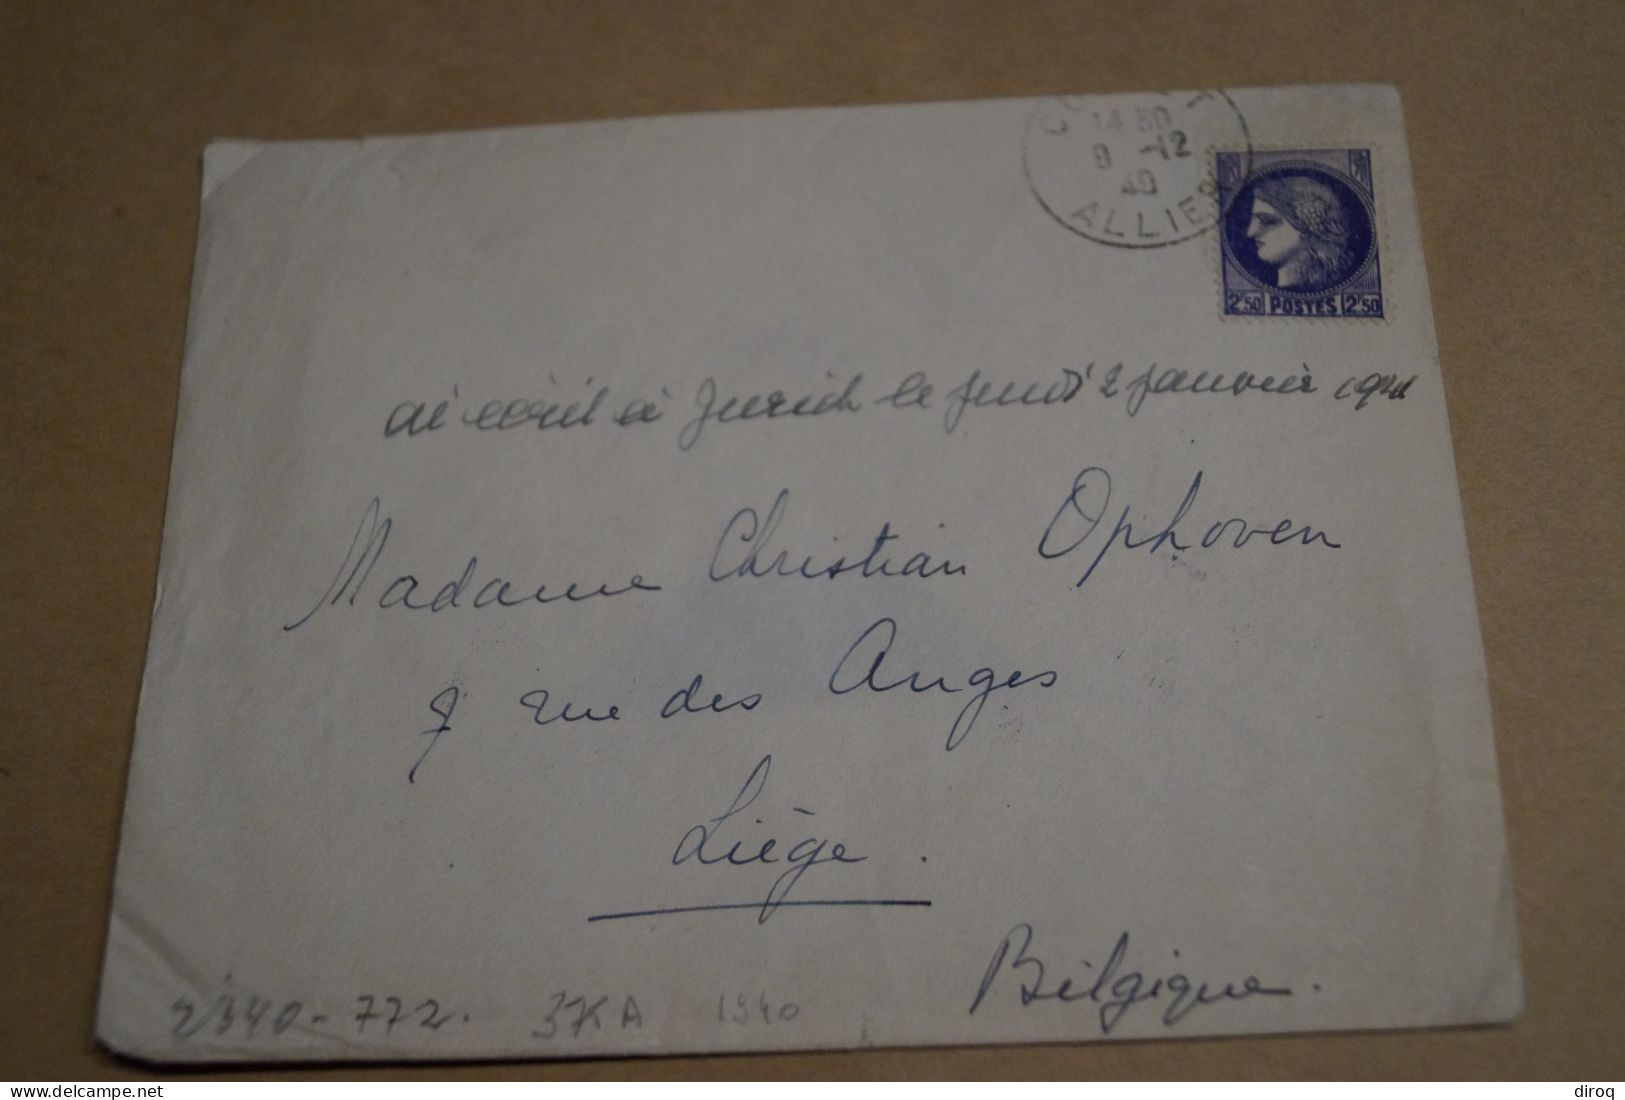 Bel Envoi De 1940 Avec Censure Militaire,occupation Allemande,guerre 40-45 - Storia Postale